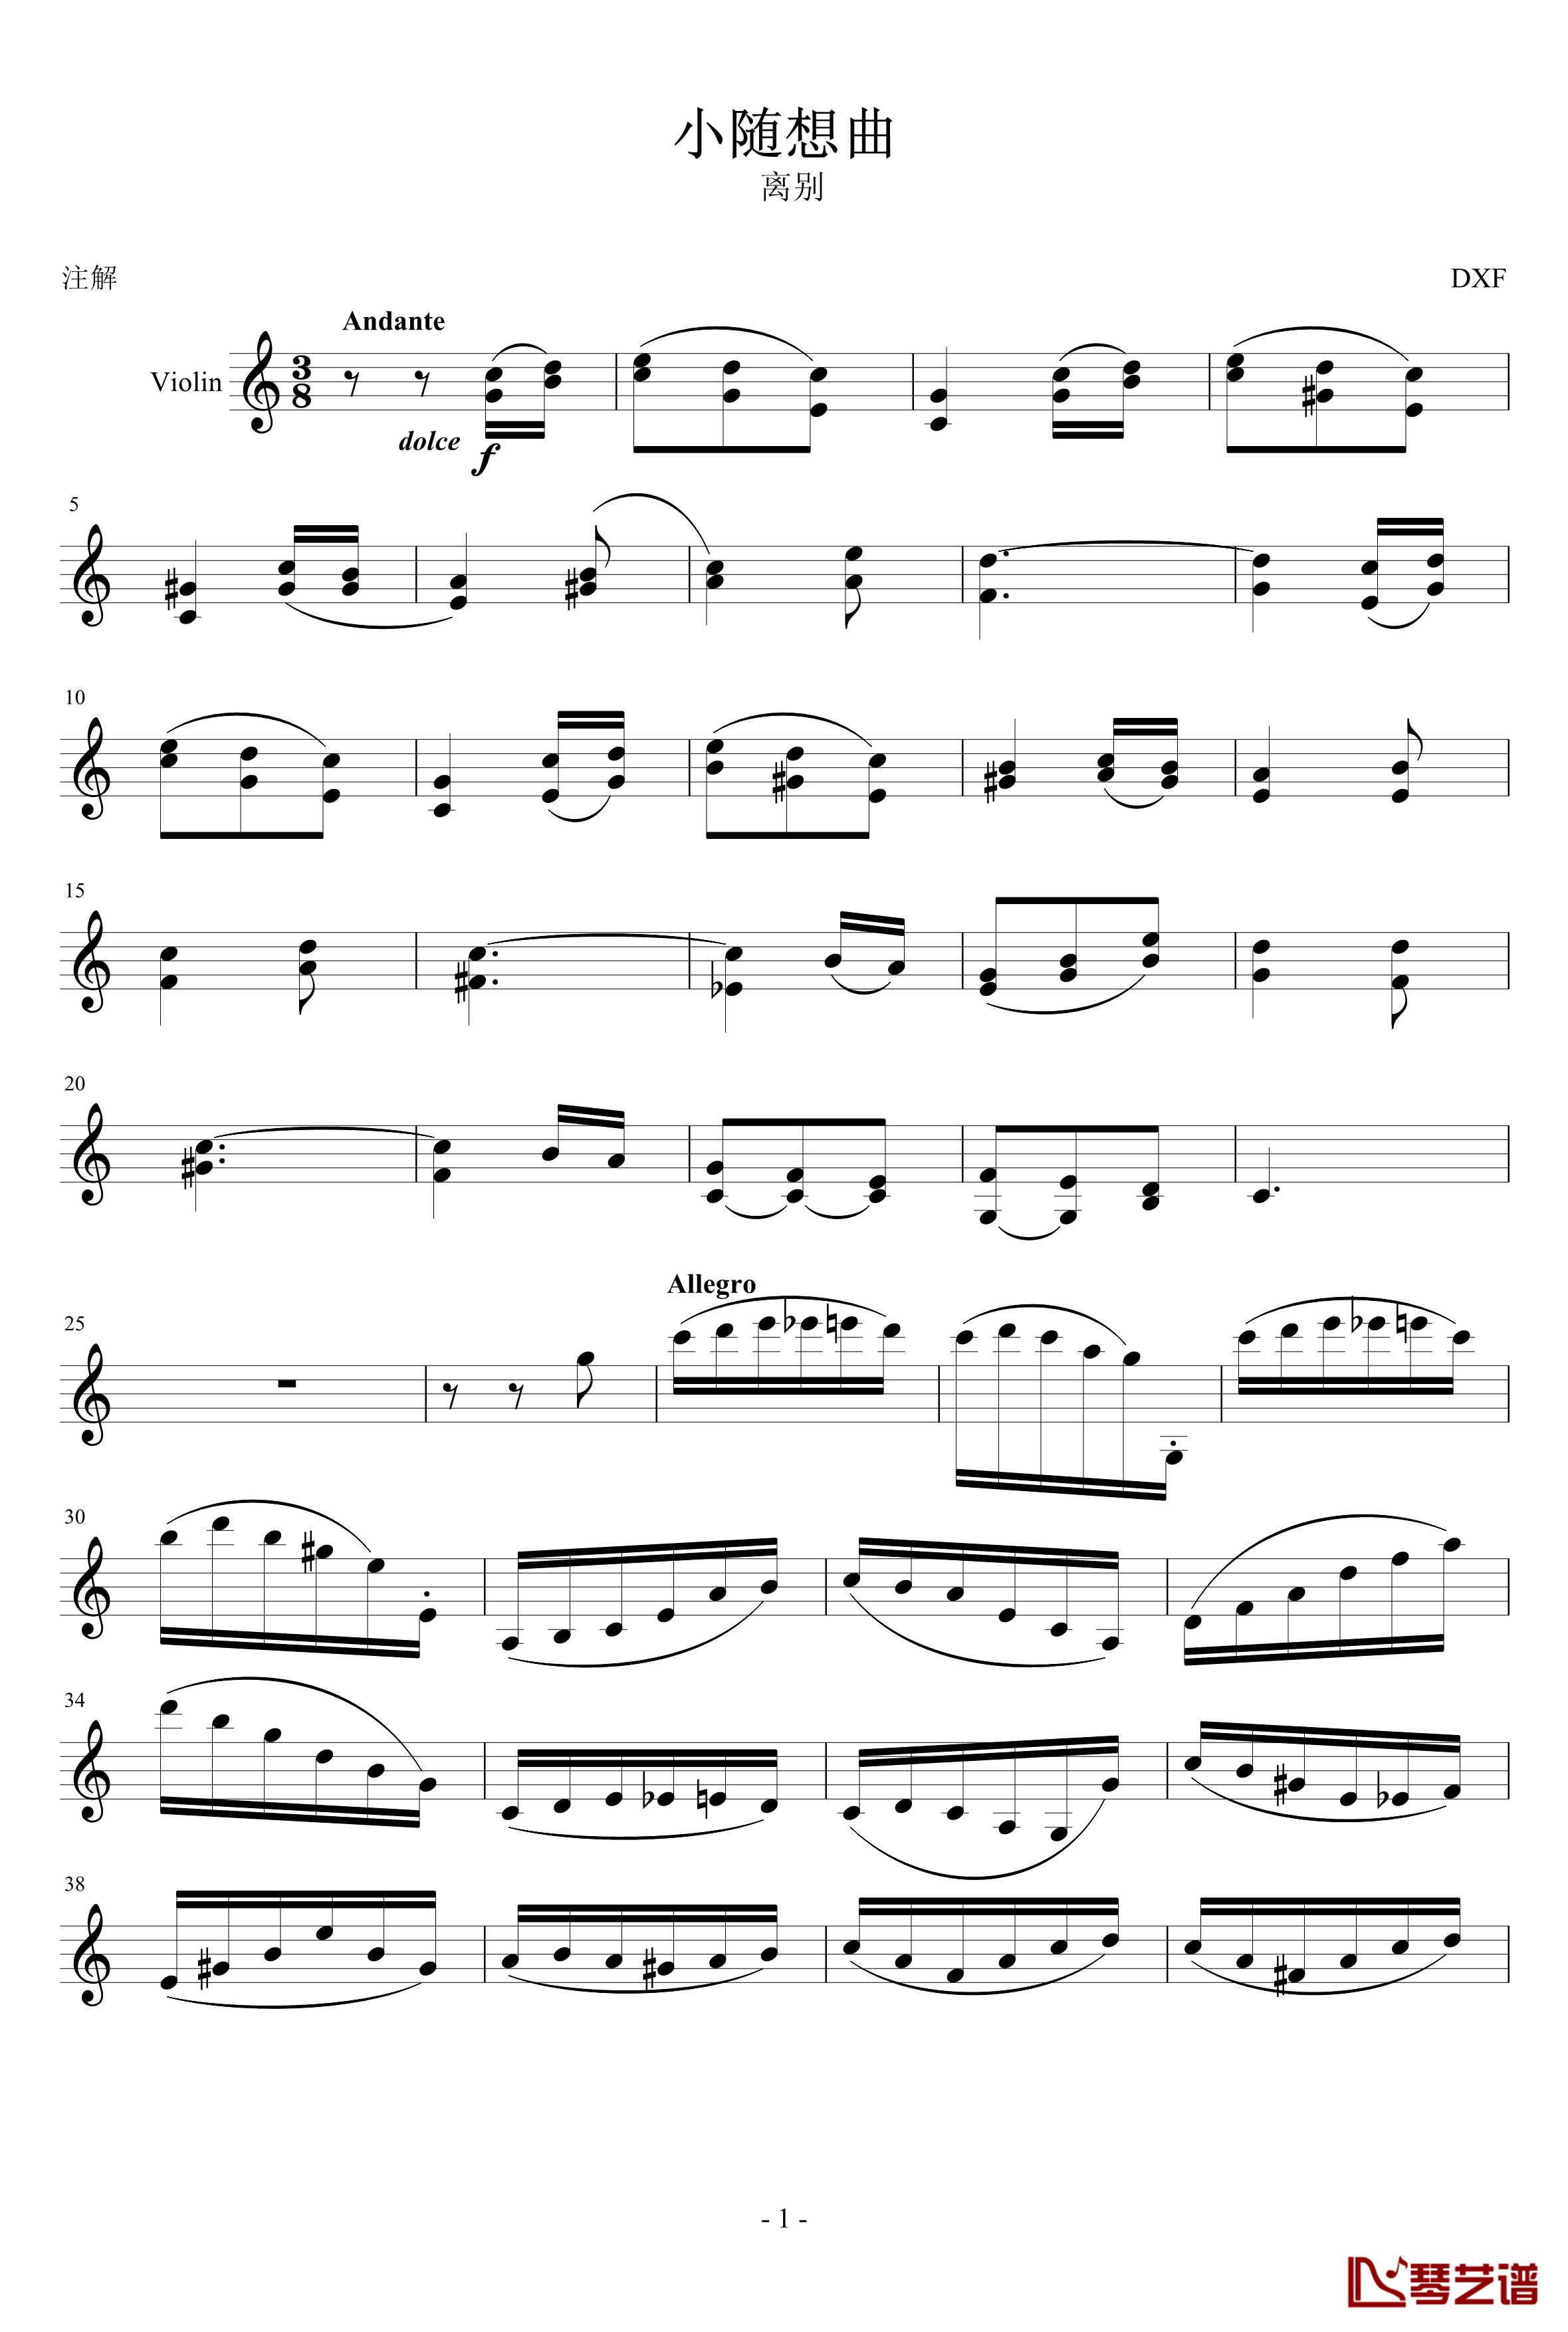 小随想曲钢琴谱-DXF1